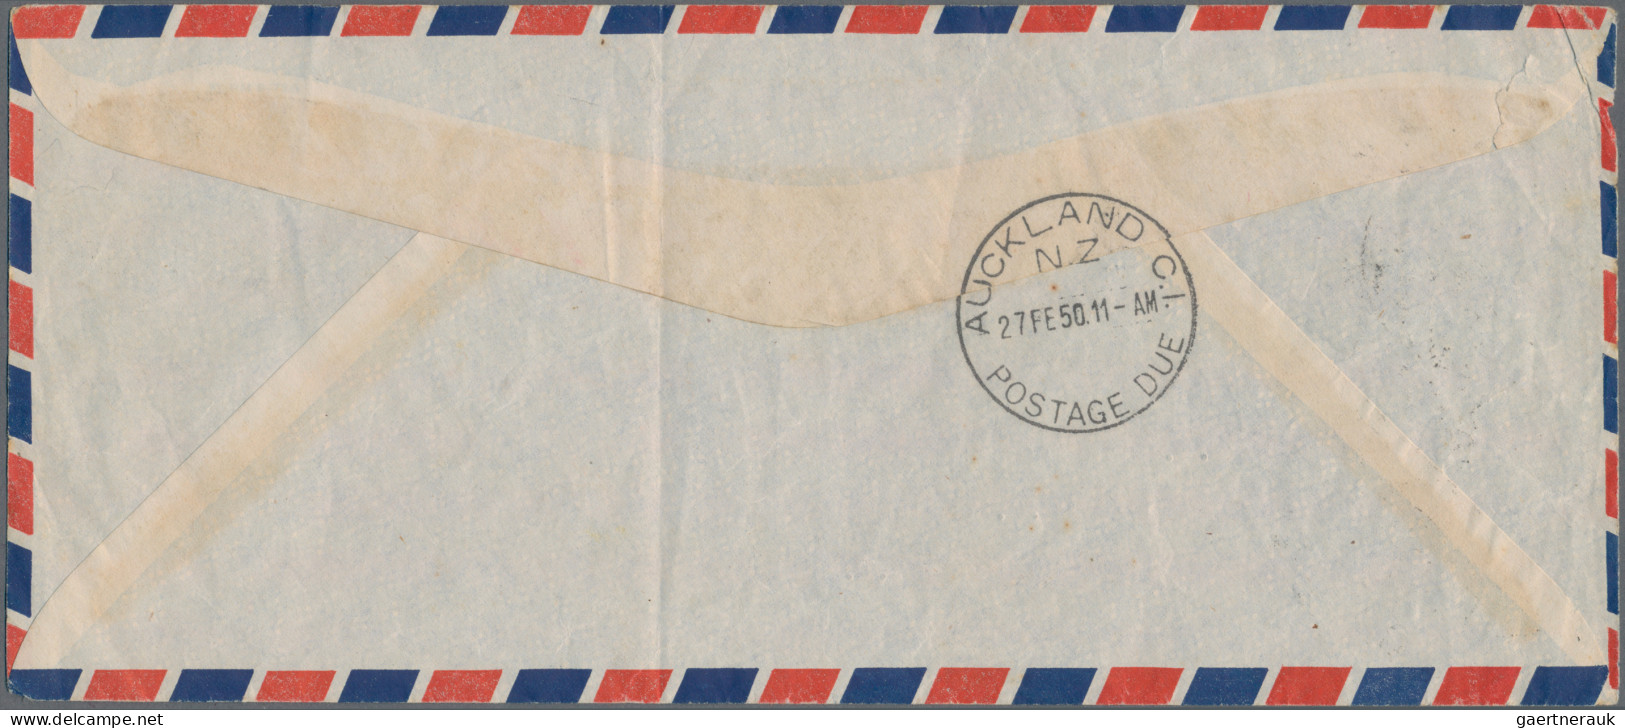 New Zealand - Postage Dues: 1950 Air Mail Envelope From Gilbert & Ellis Islands - Impuestos